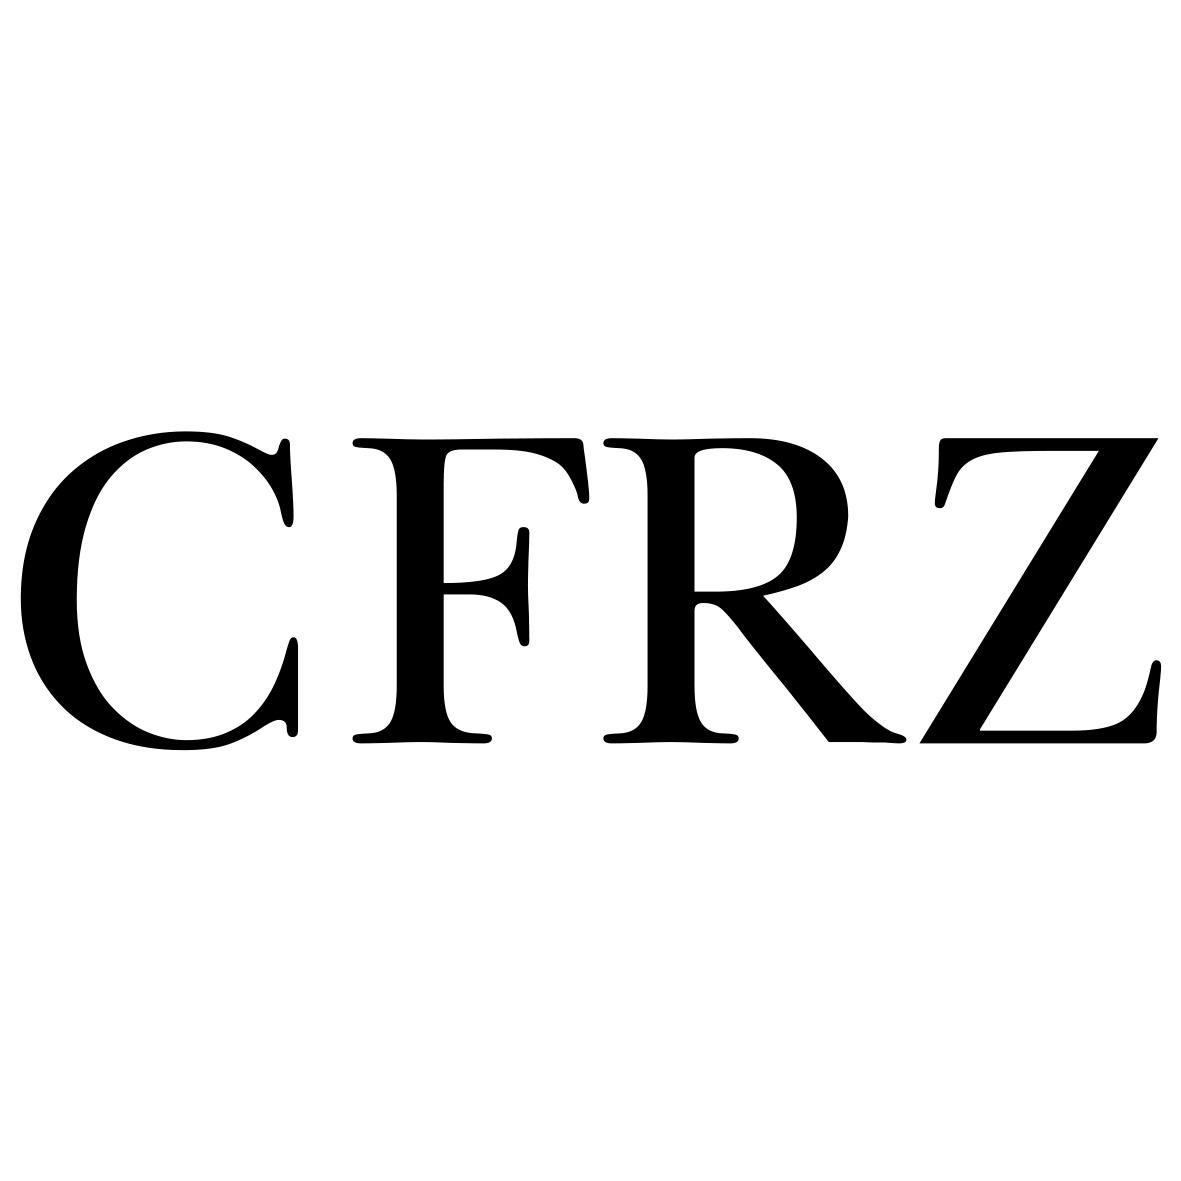 CFRZ